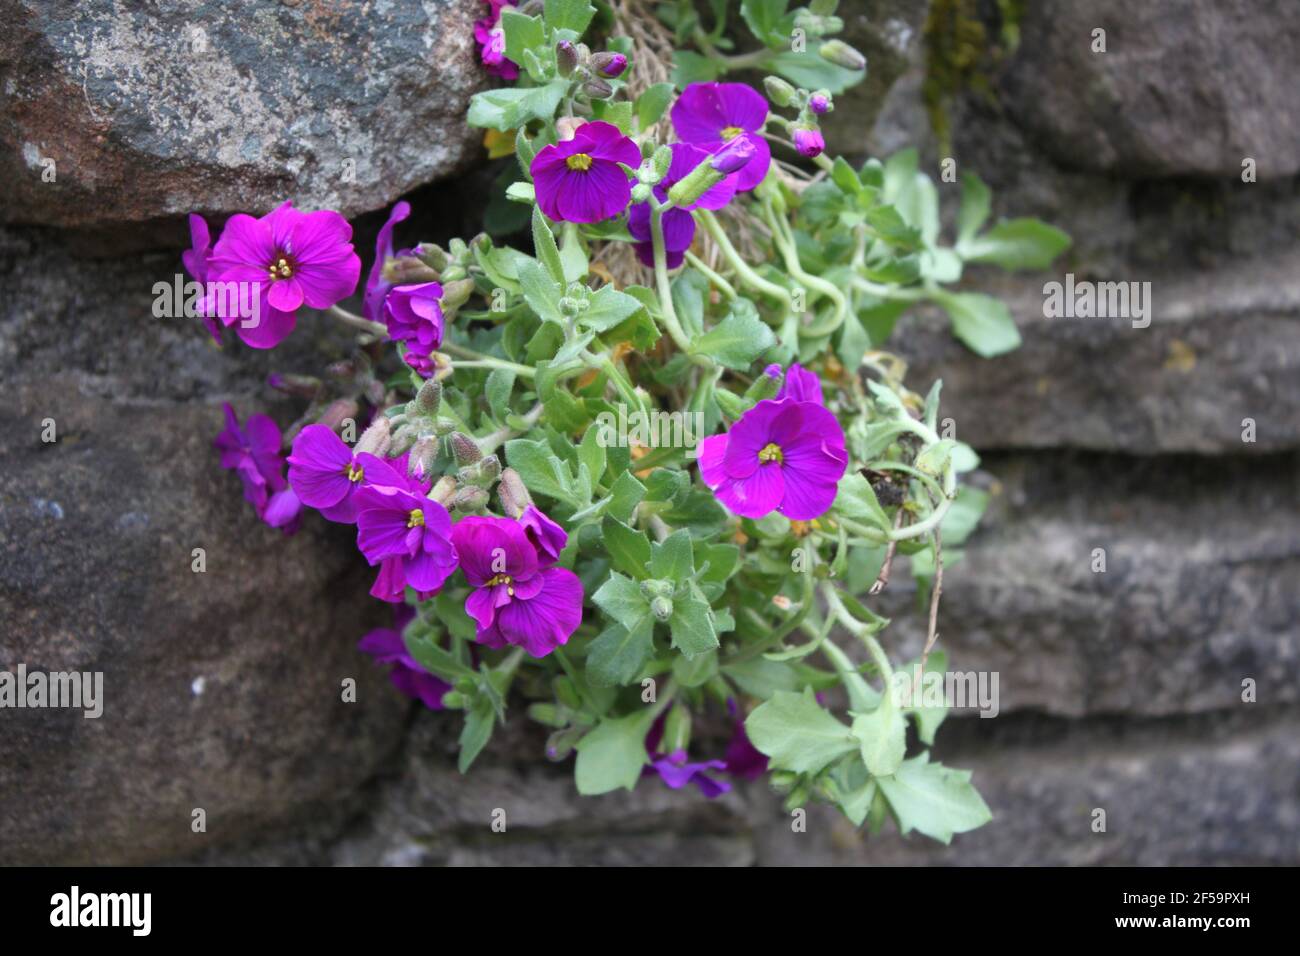 Jardín de verano, lebelia púrpura que se arrastra en un rockery. Delicadas flores de color púrpura. Espacios verdes y vibraciones de color, veranos en el Reino Unido. Foto de stock